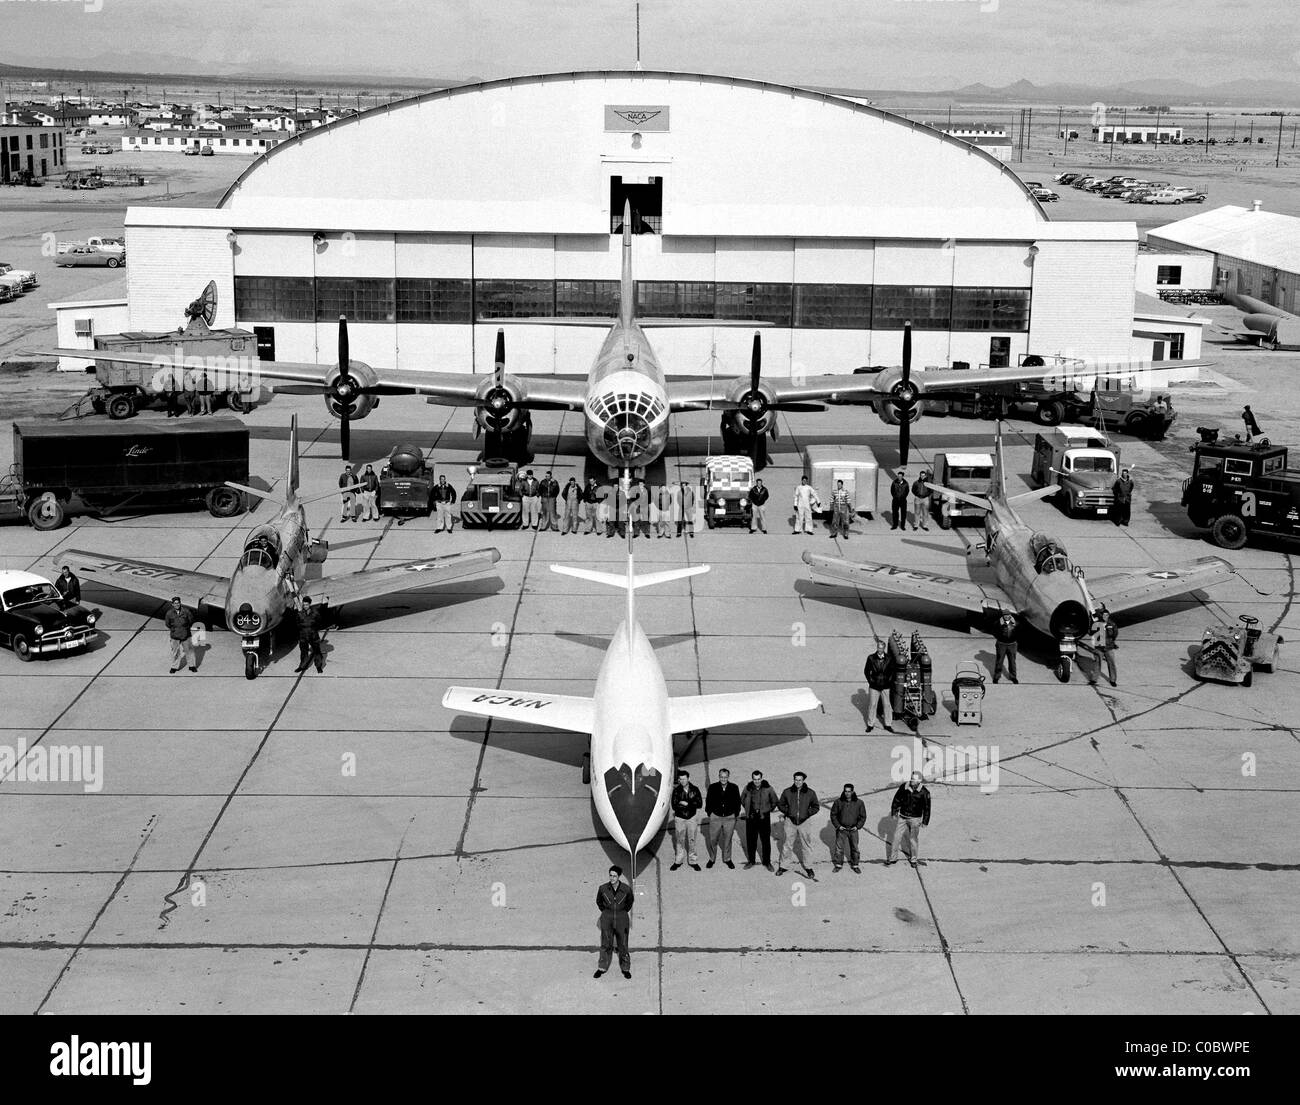 L'avion d'essai de la NACA sont rassemblés devant le hangar, 1952 Banque D'Images